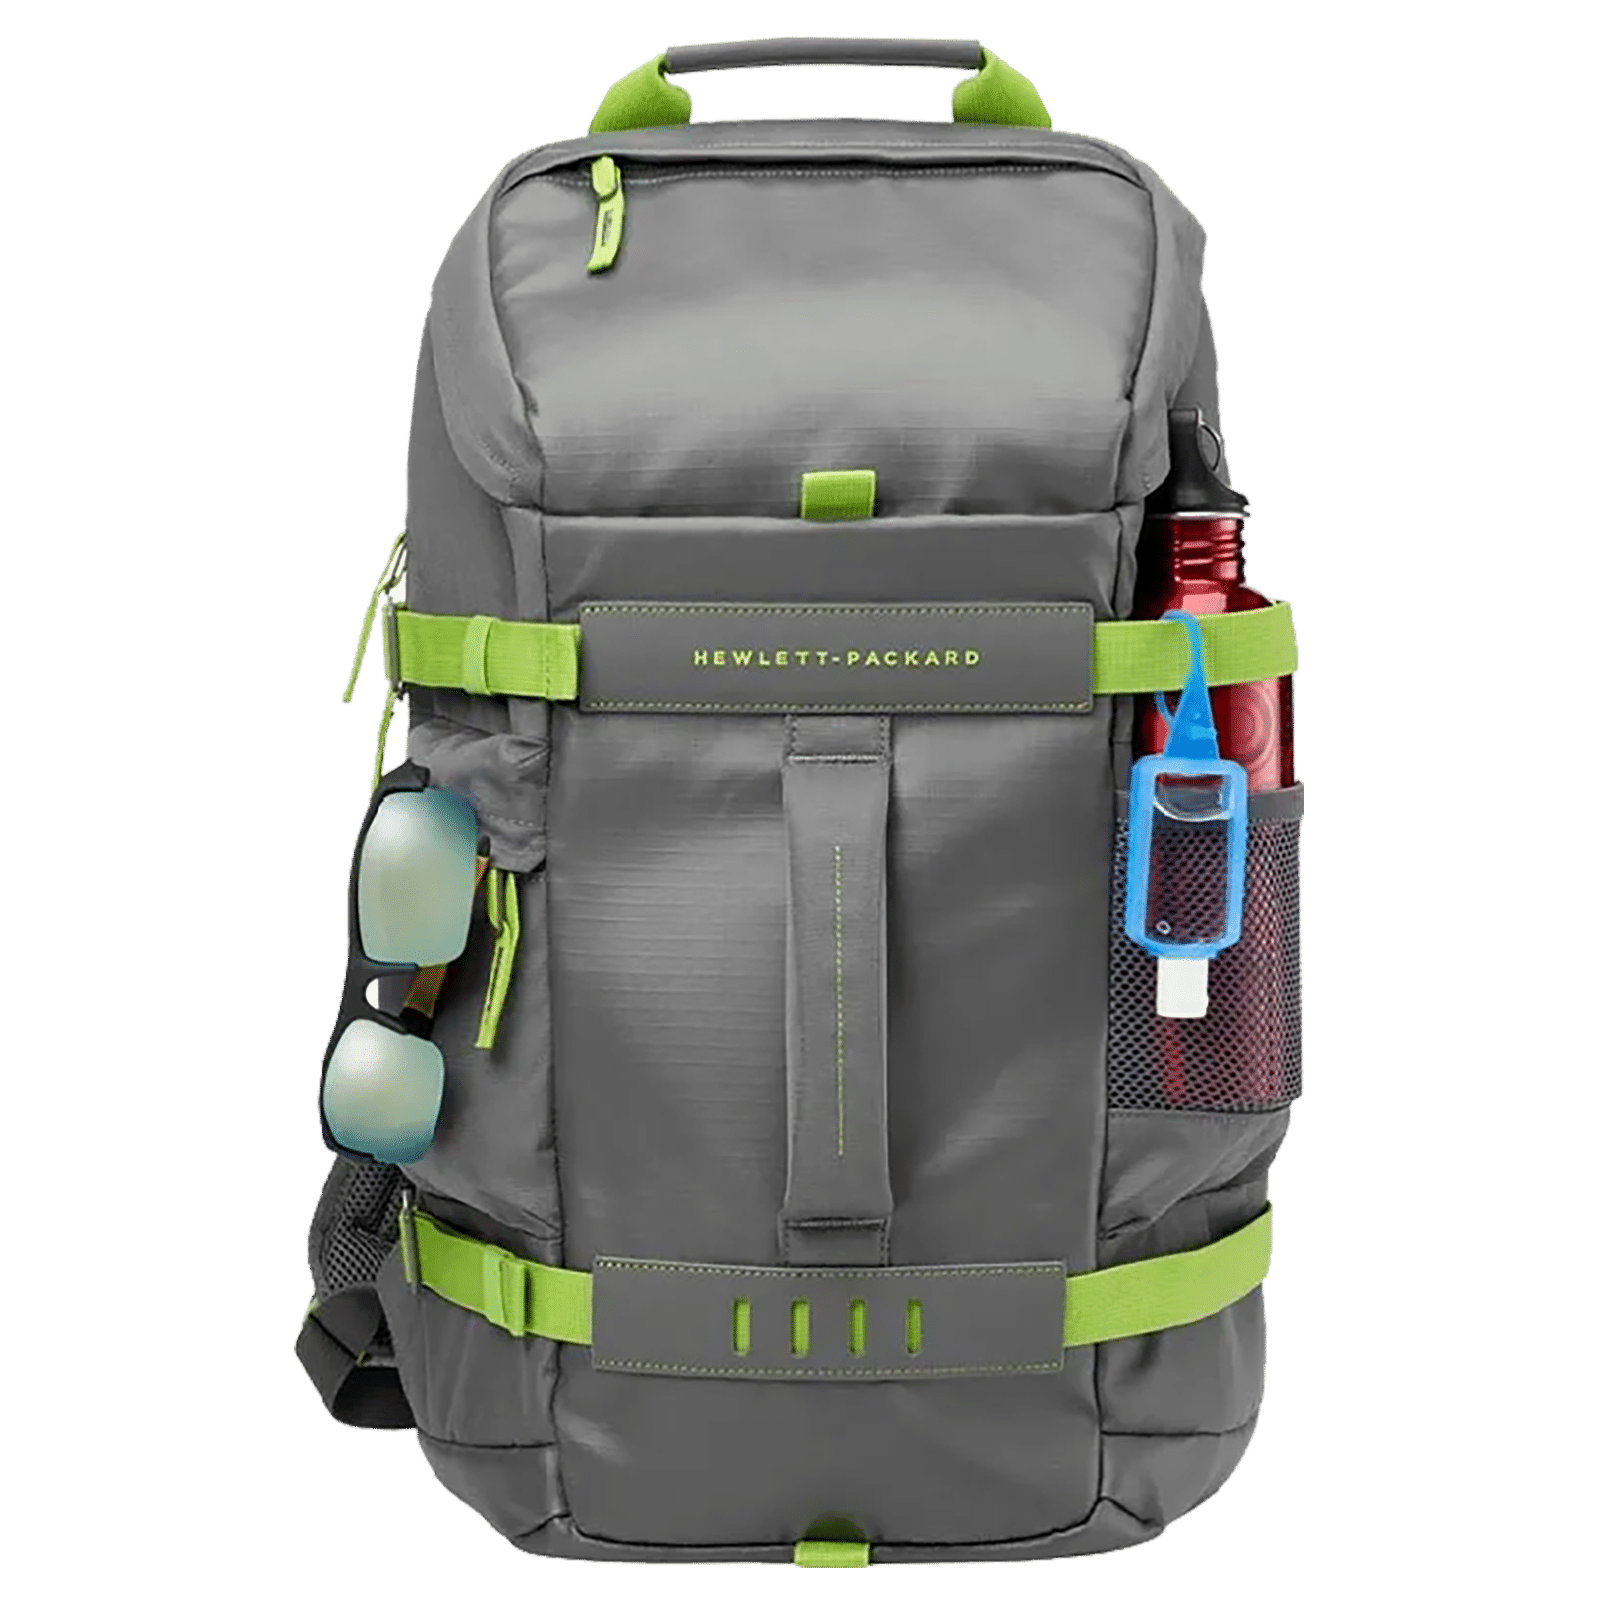 Odyssey Traveler Bag - CrucialBMXShop.com